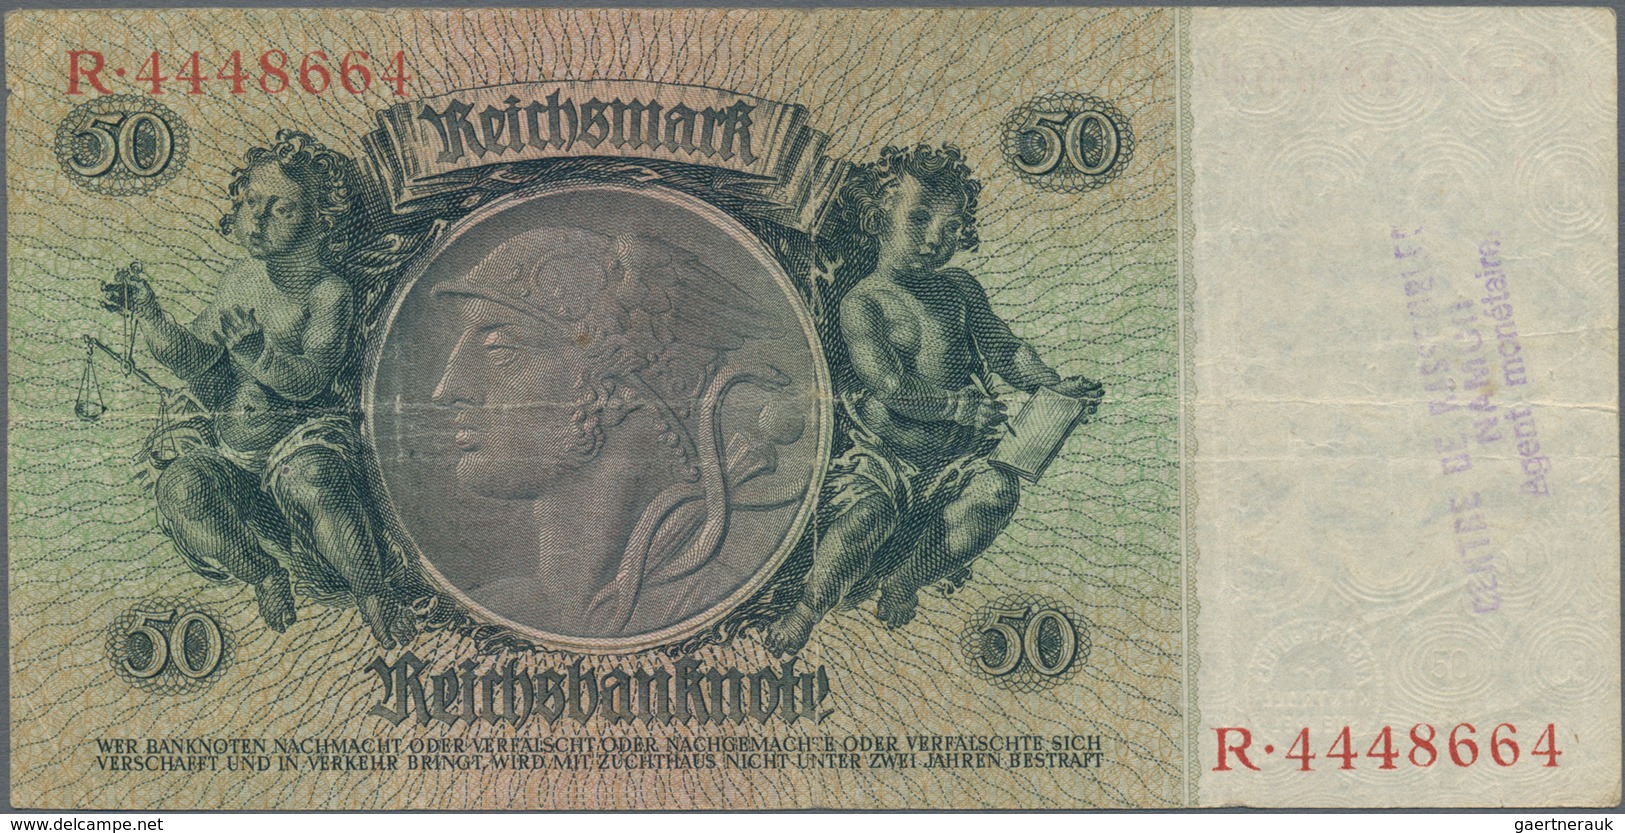 Deutschland - Deutsches Reich bis 1945: Großes Lot mit 15 belgischen Abstempelungen auf 50 Reichsmar